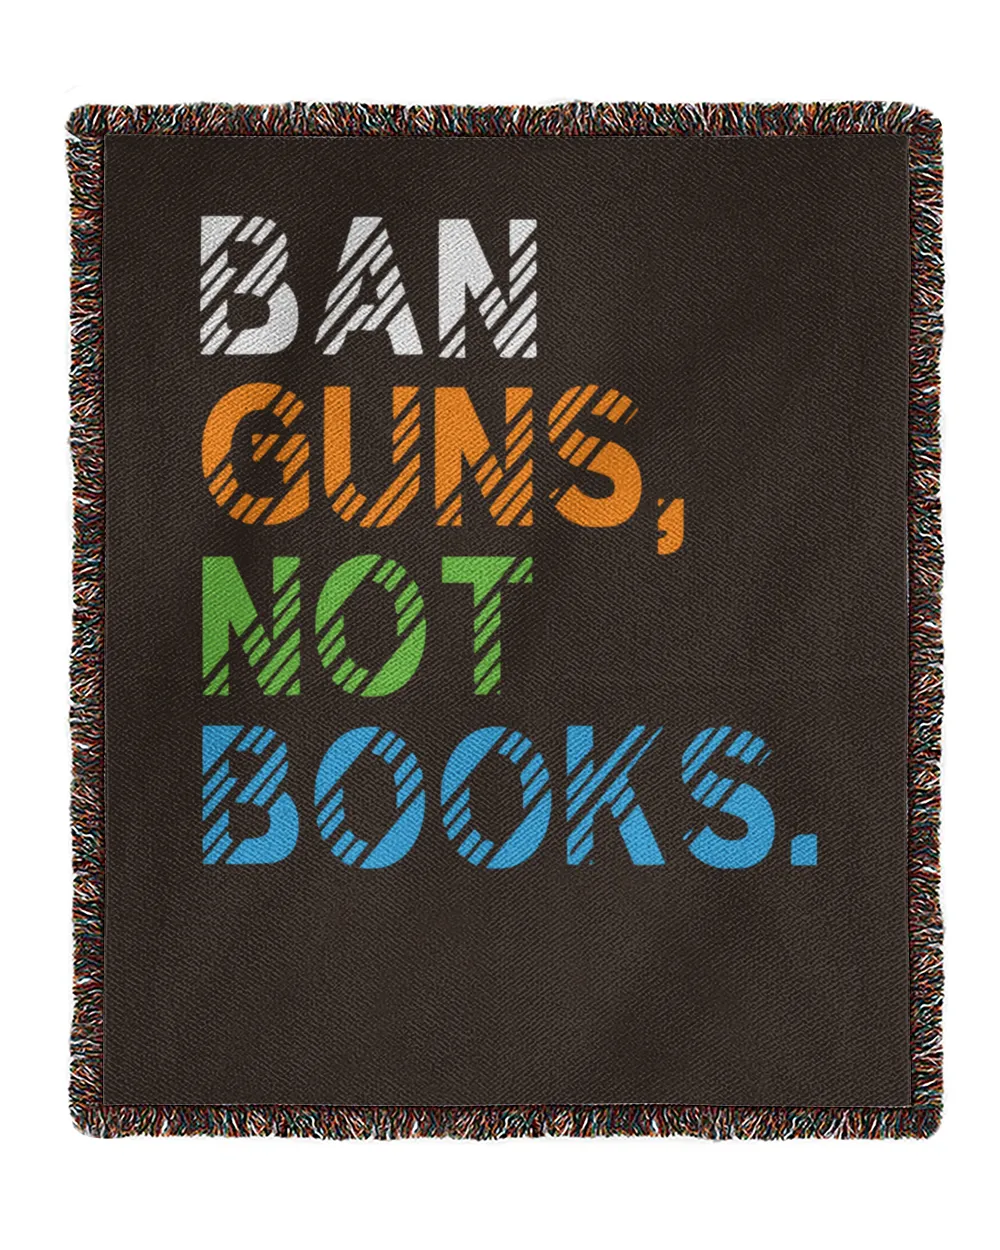 Ban Guns Not Book